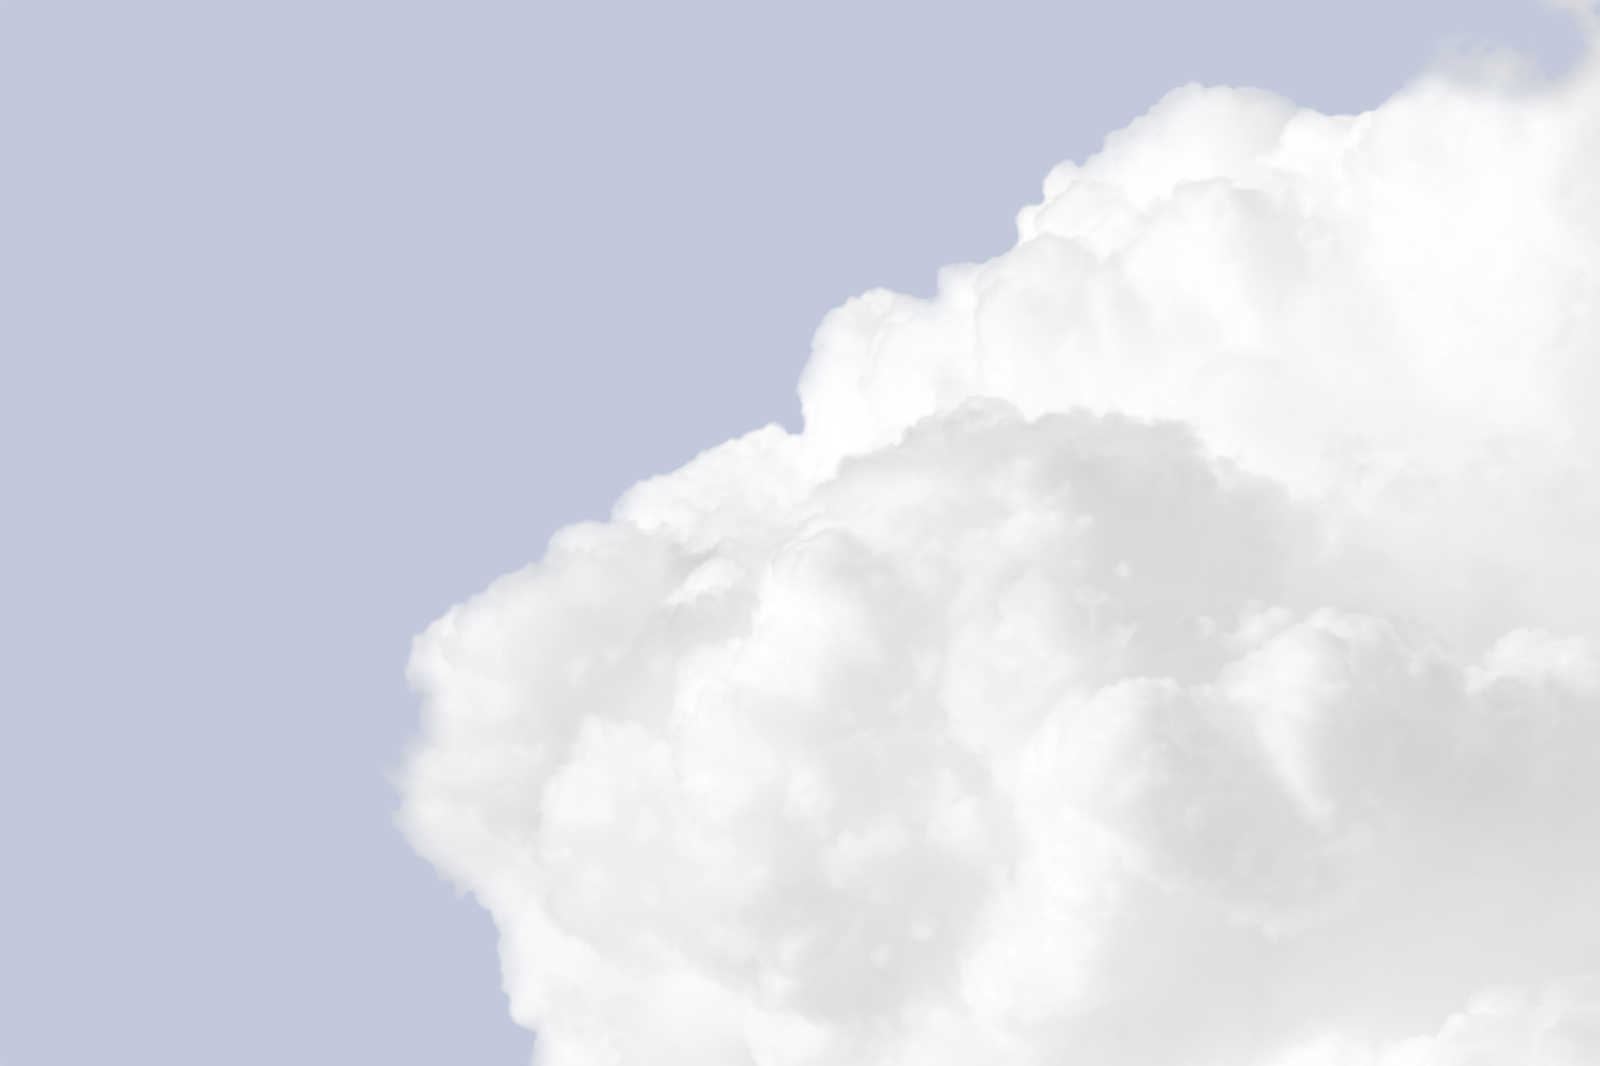             Cuadro en lienzo con nubes blancas en un cielo azul brillante - 0,90 m x 0,60 m
        